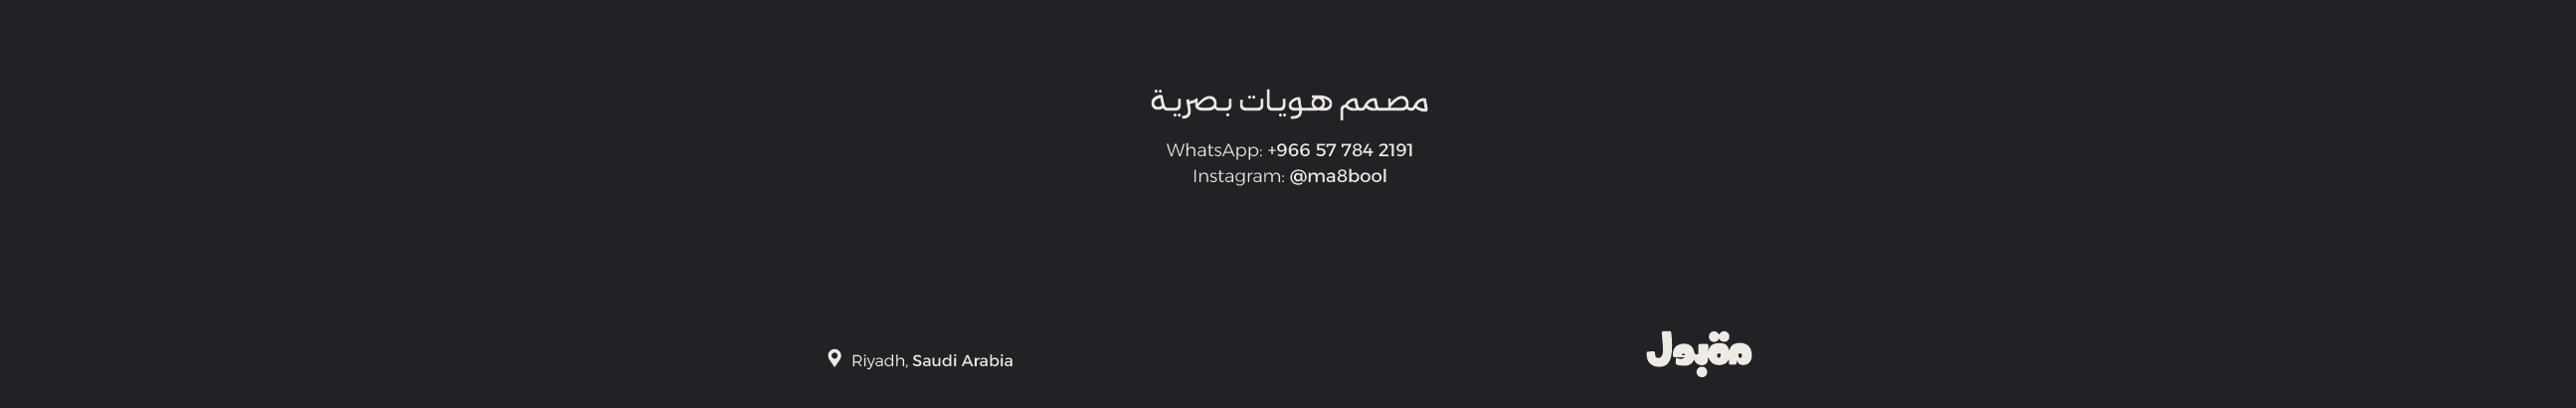 Banner de perfil de AbdulElah Maqbool